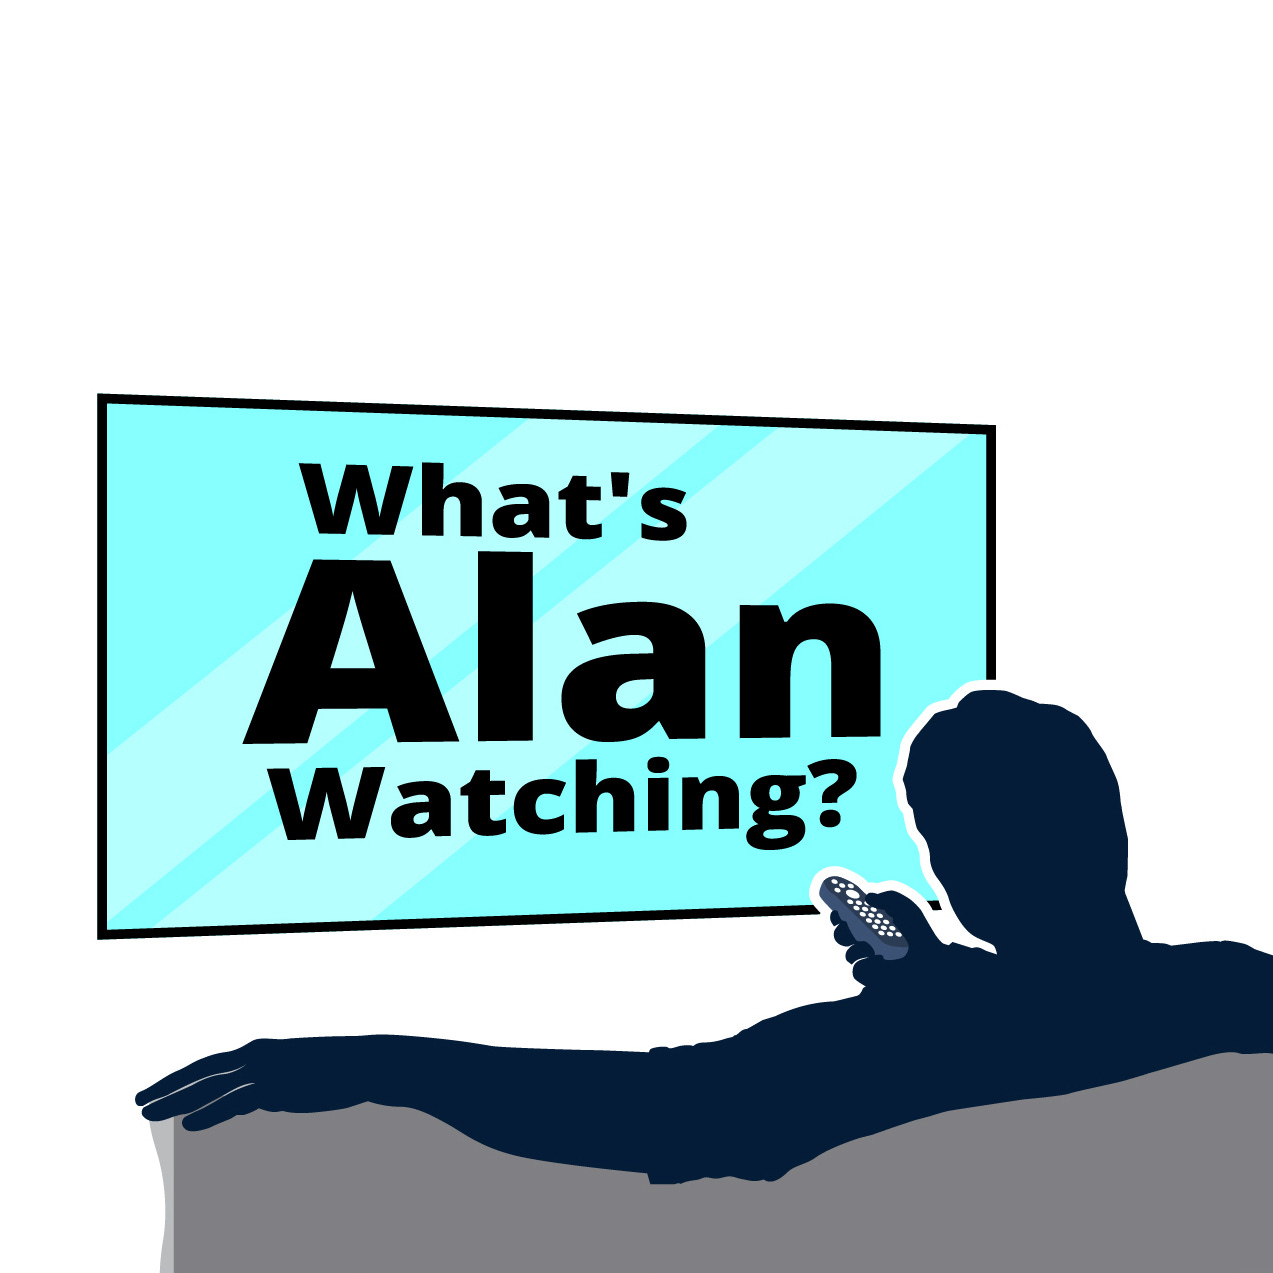 What's Alan Watching?